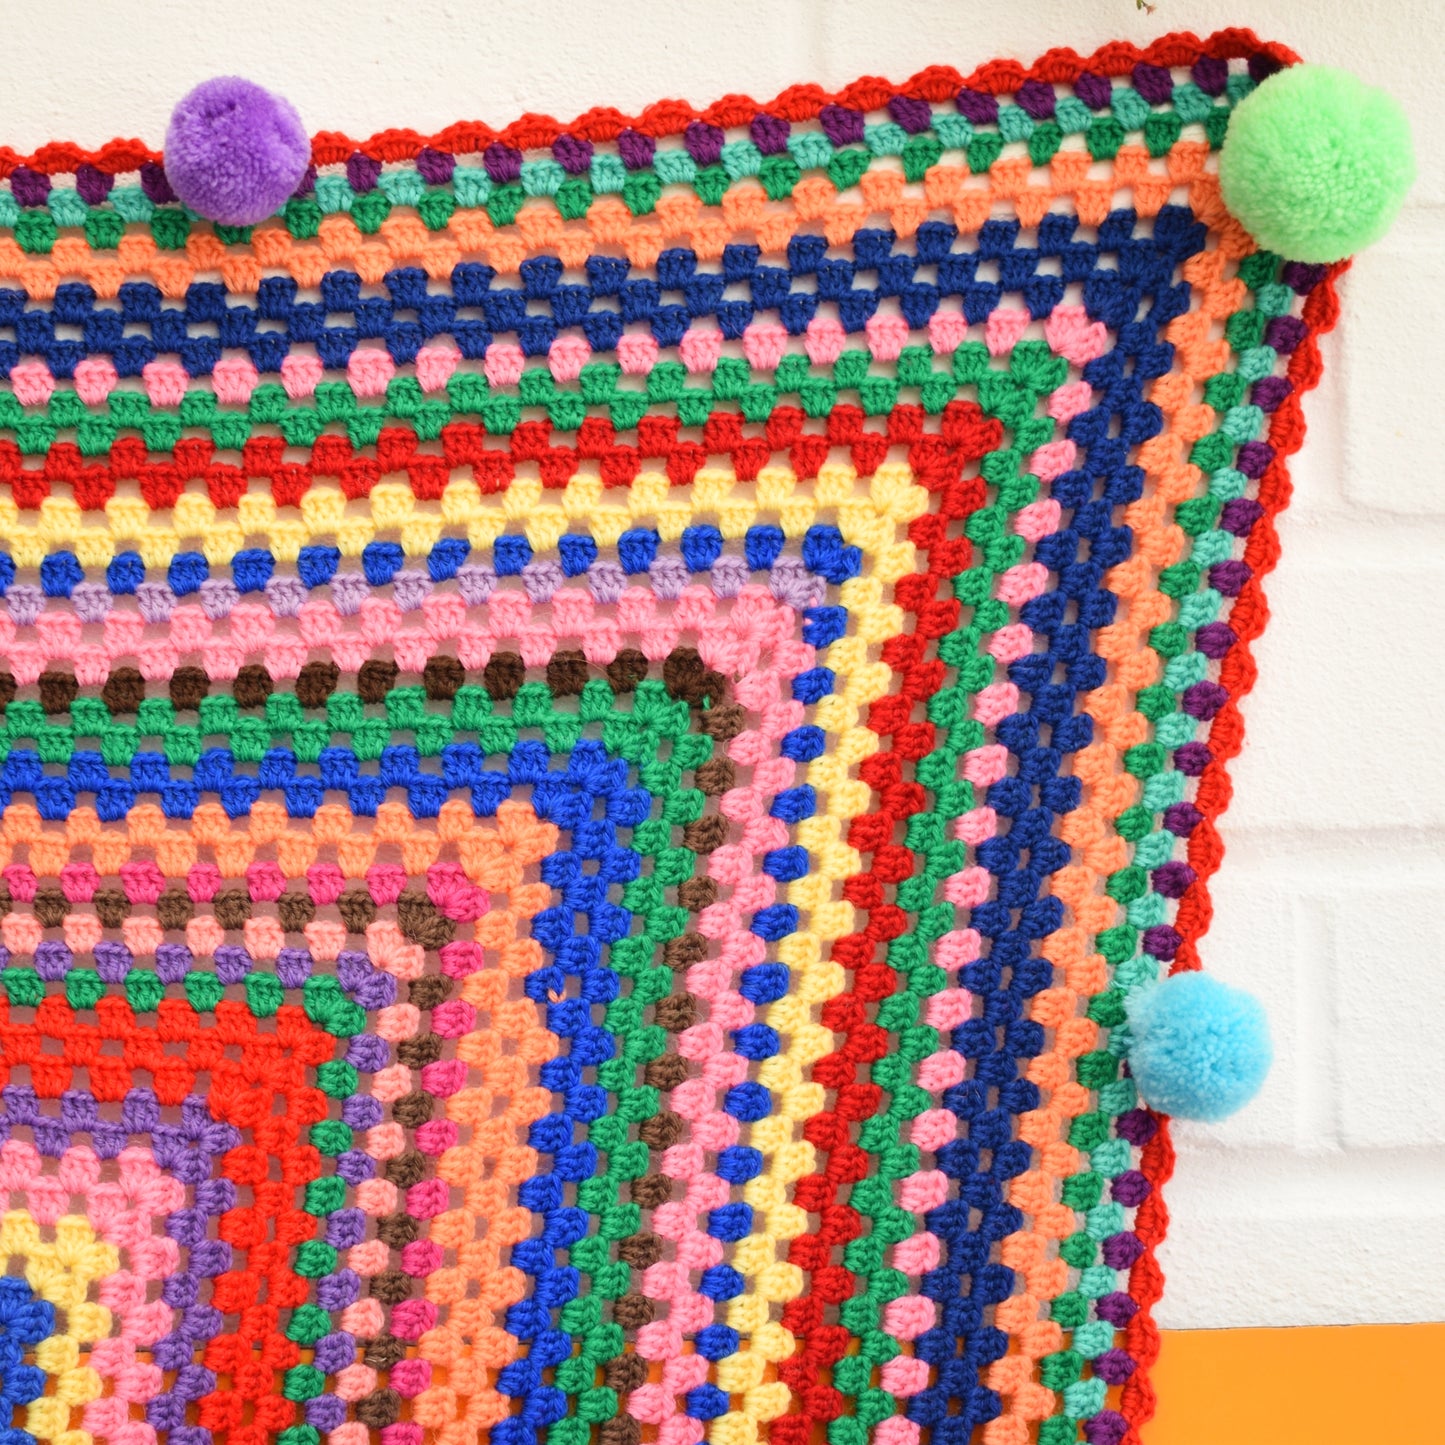 Vintage 1970s Crochet Blanket - Pom Poms